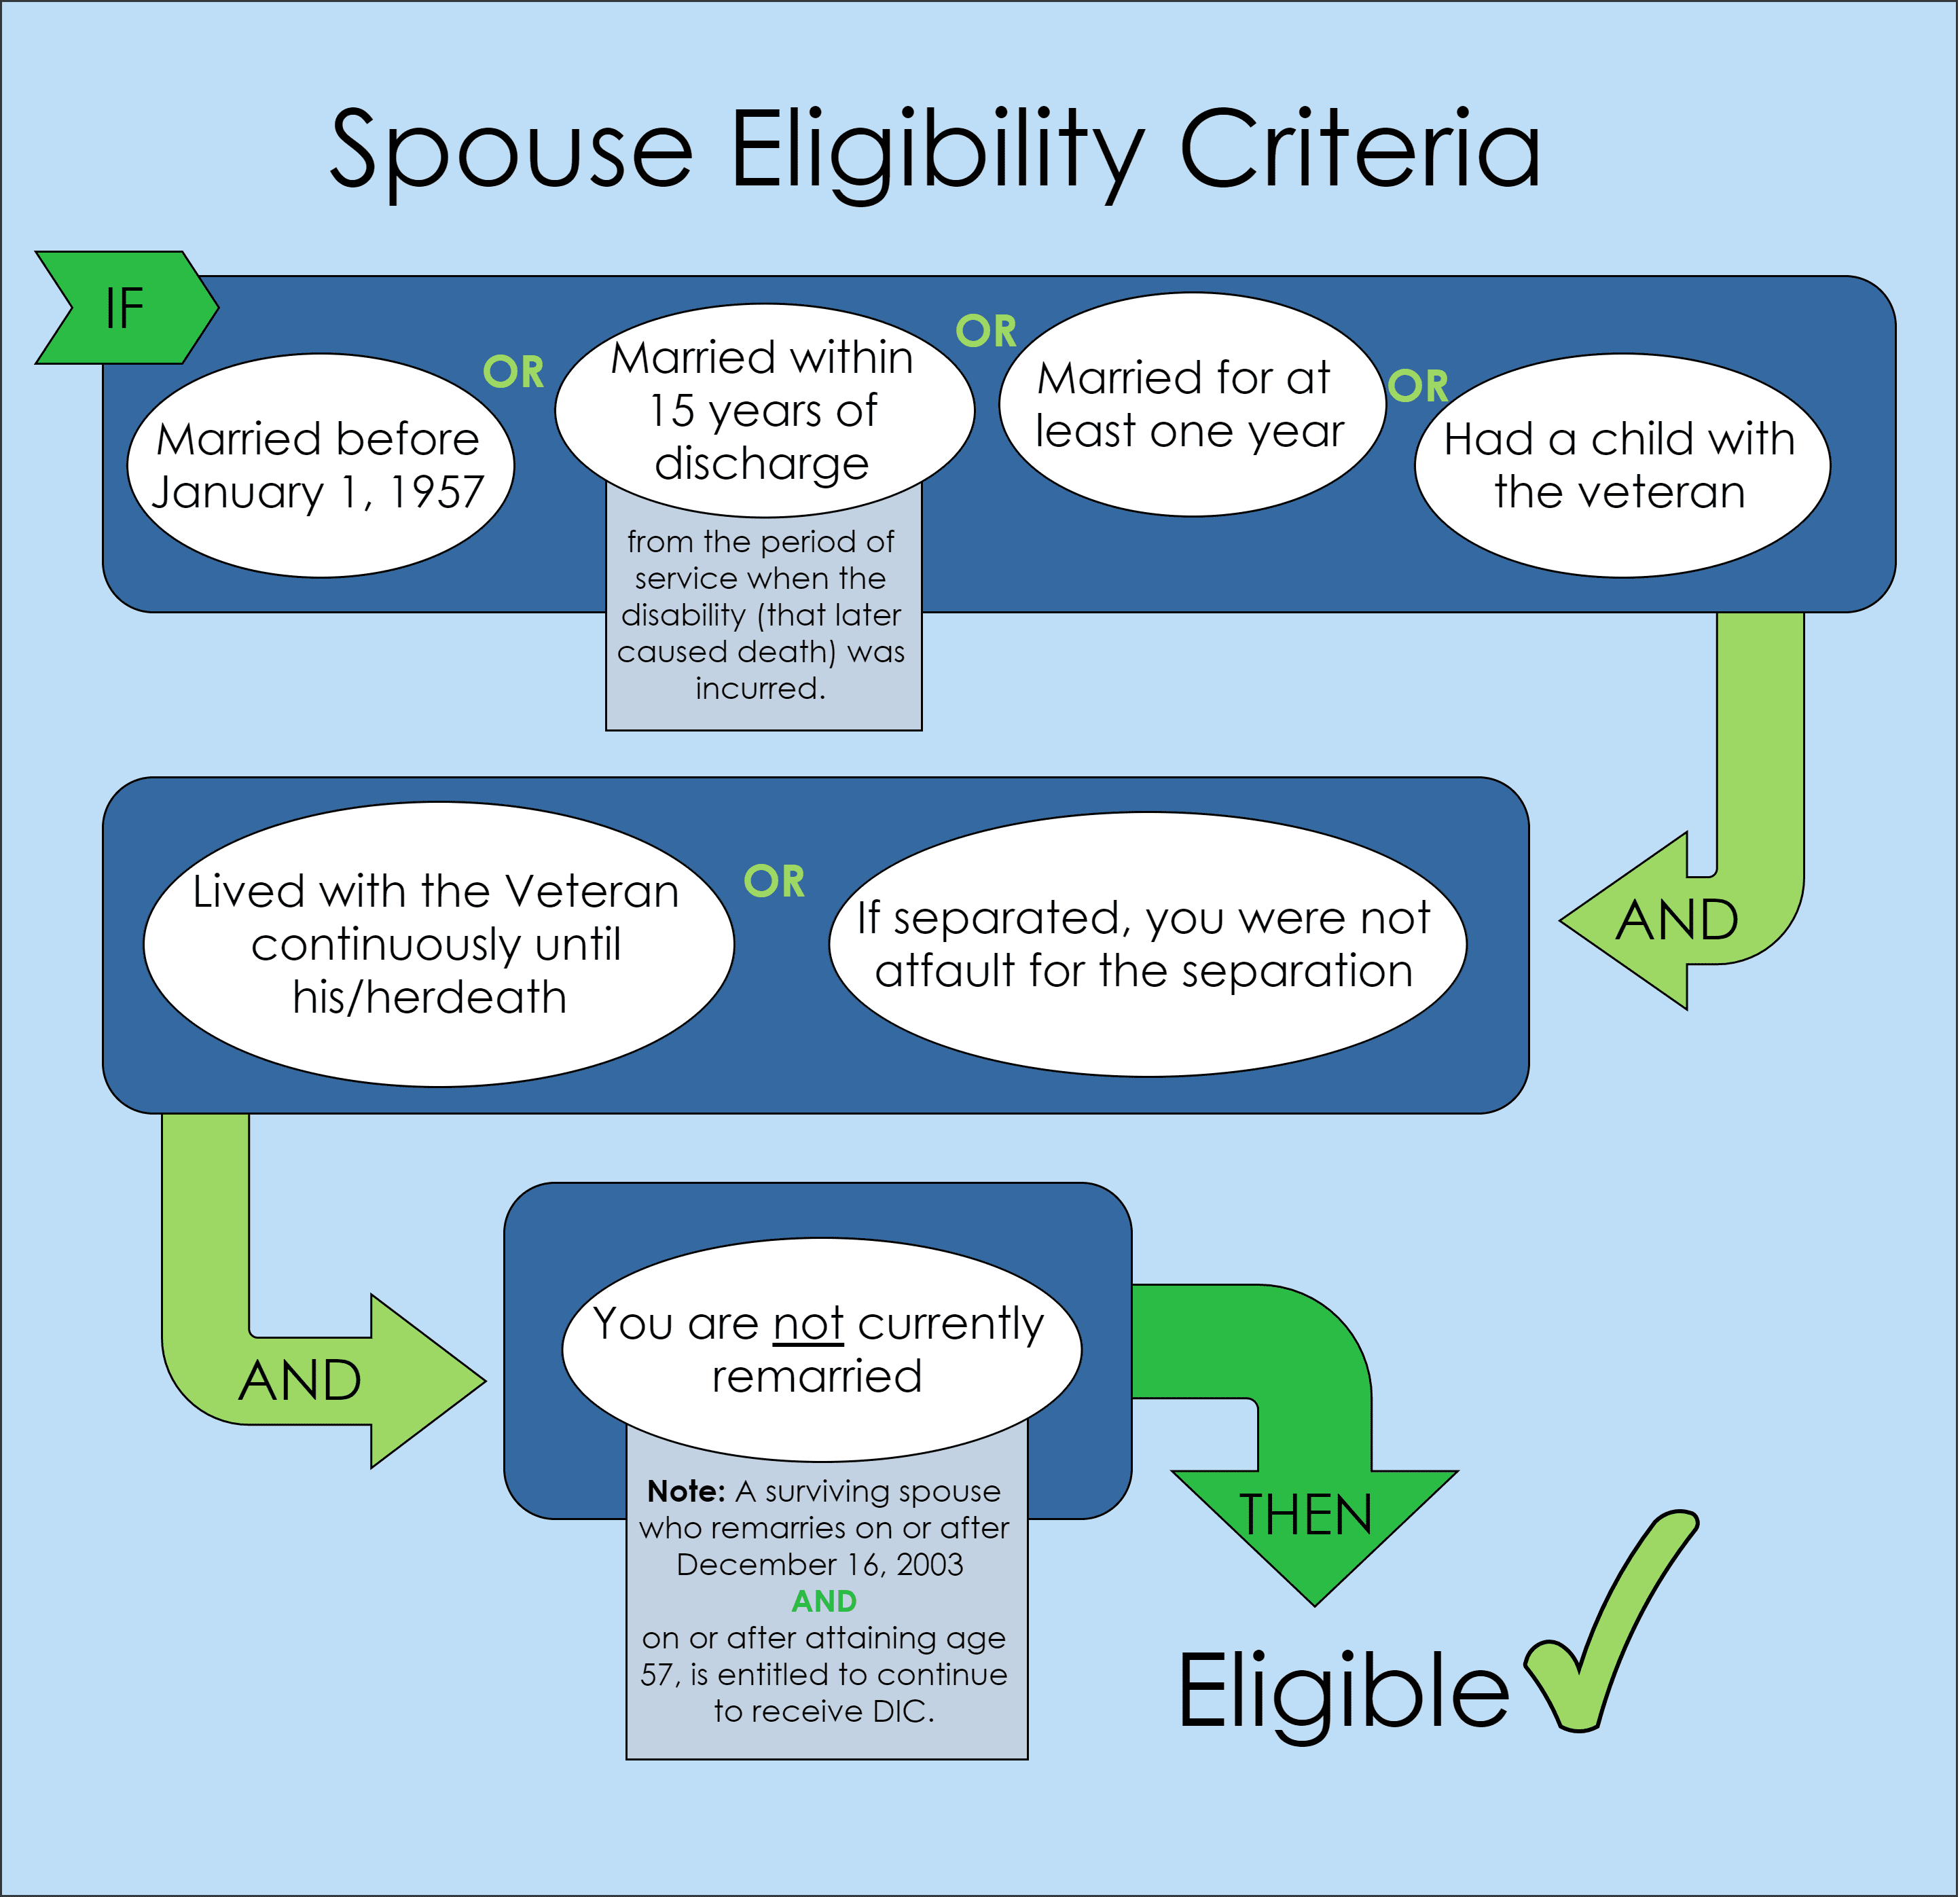 spouse eligibility criteria infographic